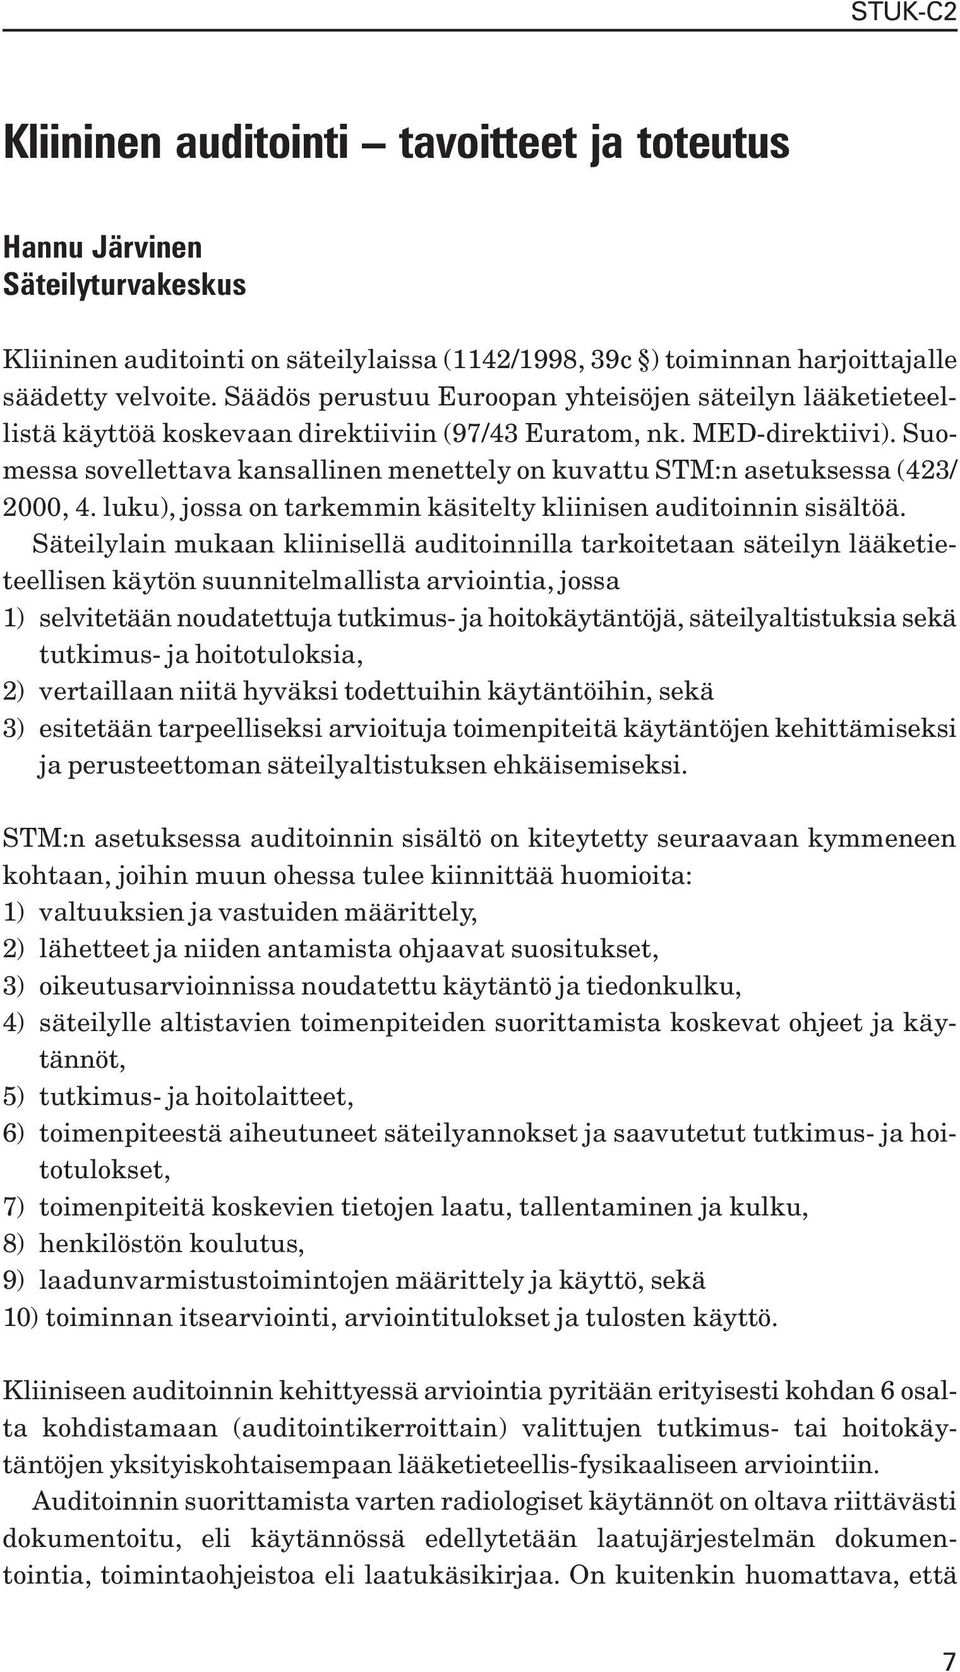 Suomessa sovellettava kansallinen menettely on kuvattu STM:n asetuksessa (423/ 2000, 4. luku), jossa on tarkemmin käsitelty kliinisen auditoinnin sisältöä.